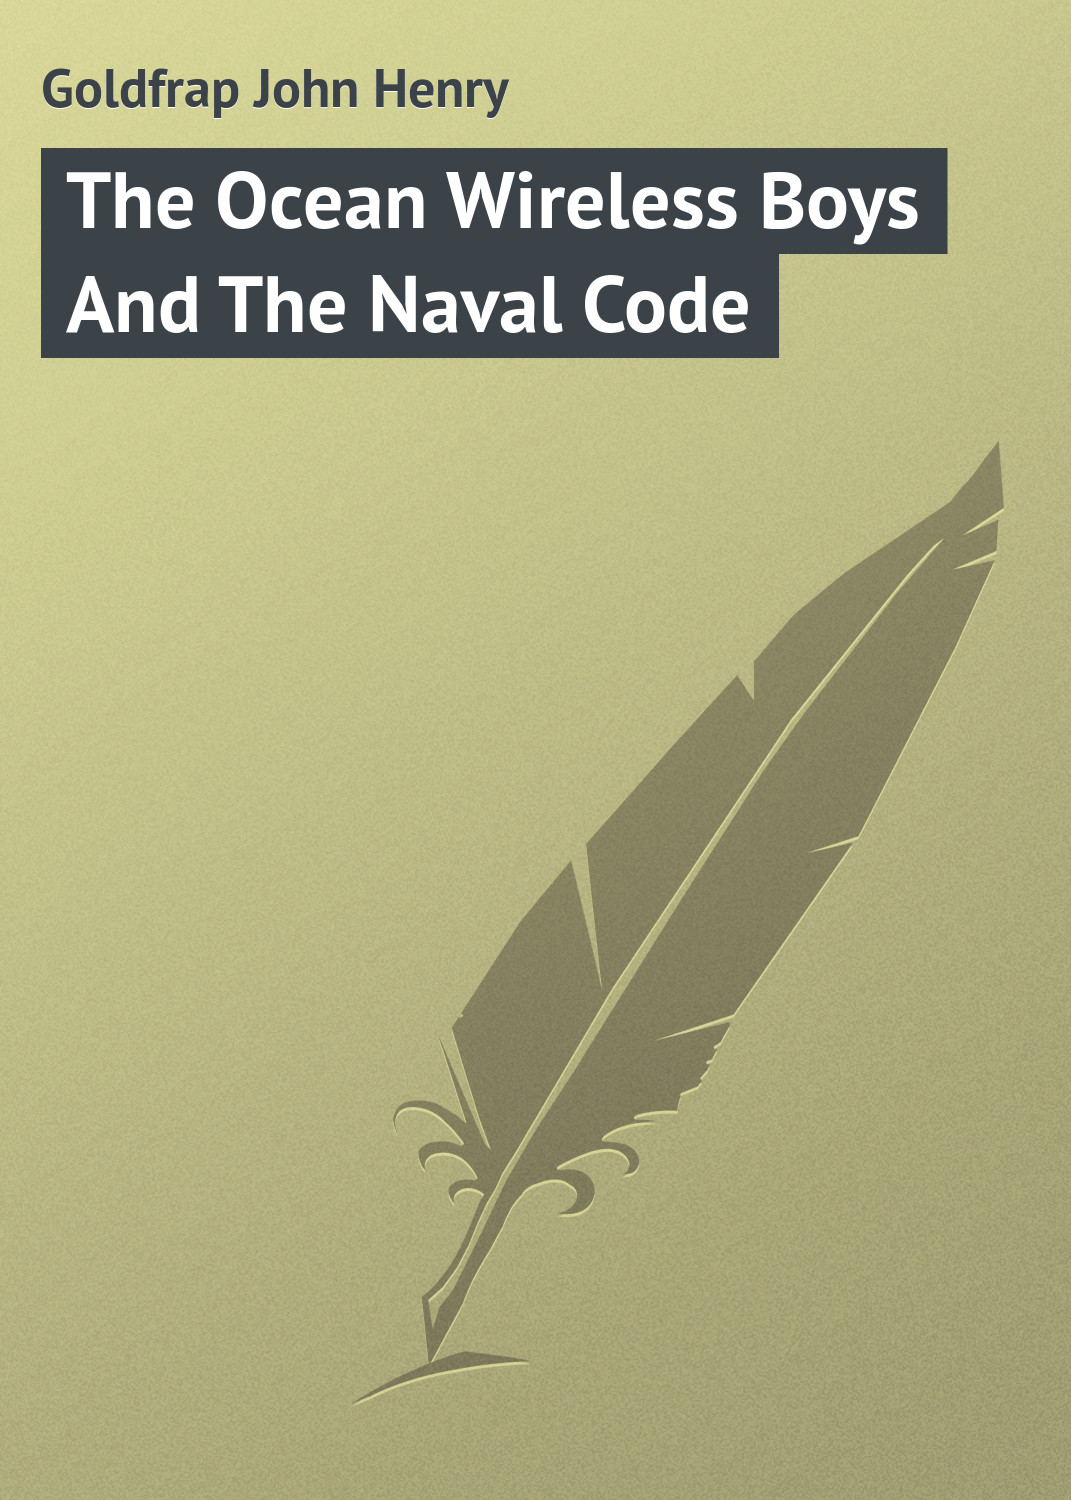 Книга The Ocean Wireless Boys And The Naval Code из серии , созданная John Goldfrap, может относится к жанру Иностранные языки, Зарубежная классика, Зарубежные детские книги. Стоимость электронной книги The Ocean Wireless Boys And The Naval Code с идентификатором 23144739 составляет 5.99 руб.